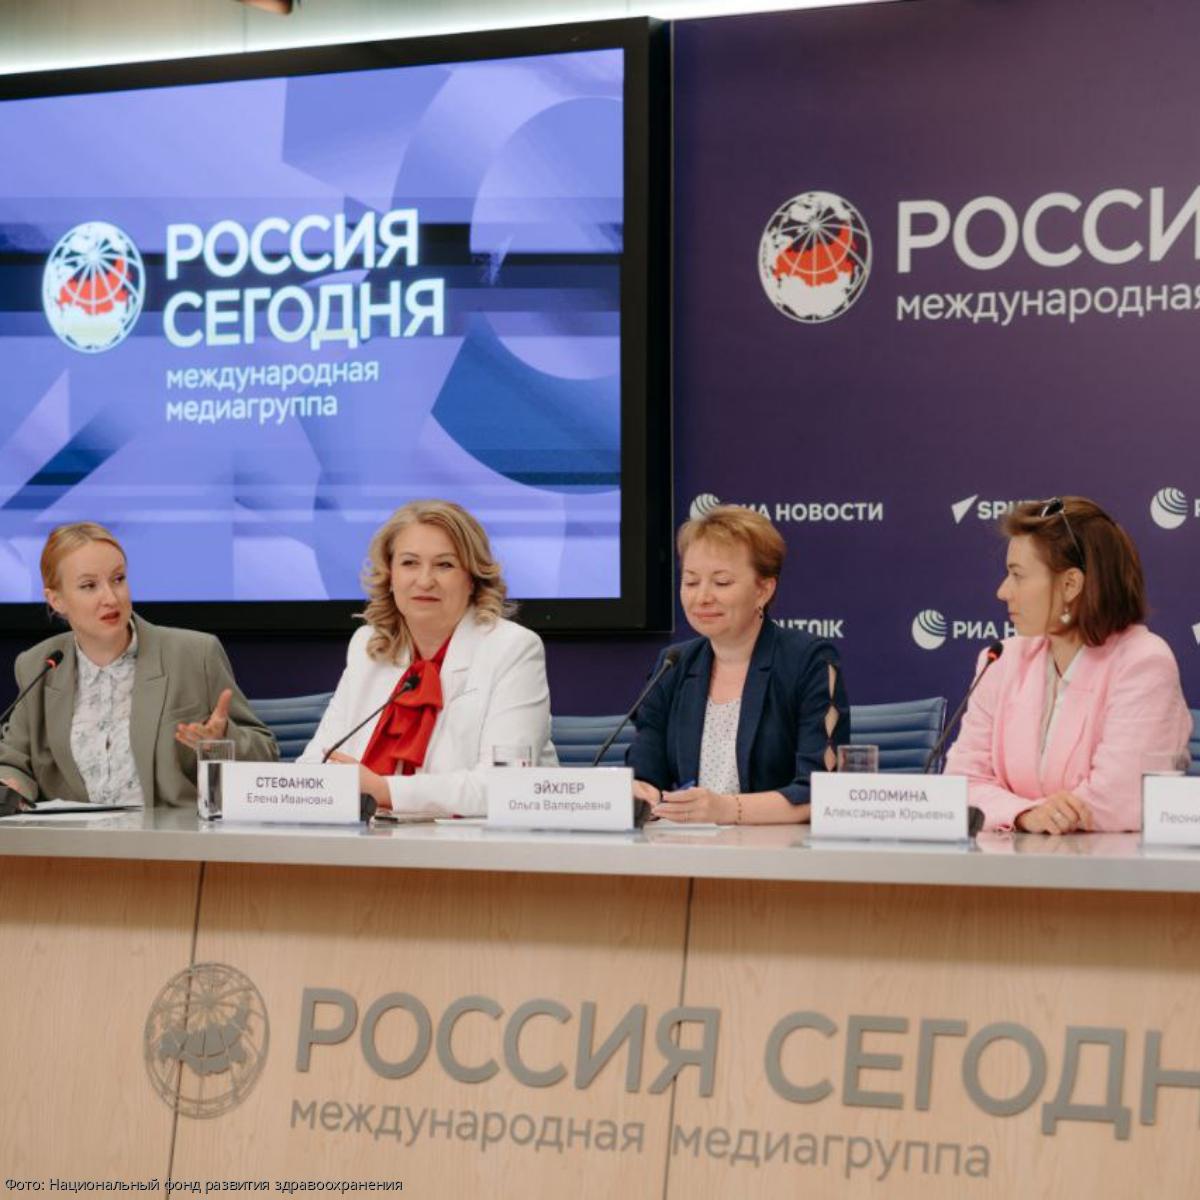 Конференция в москве